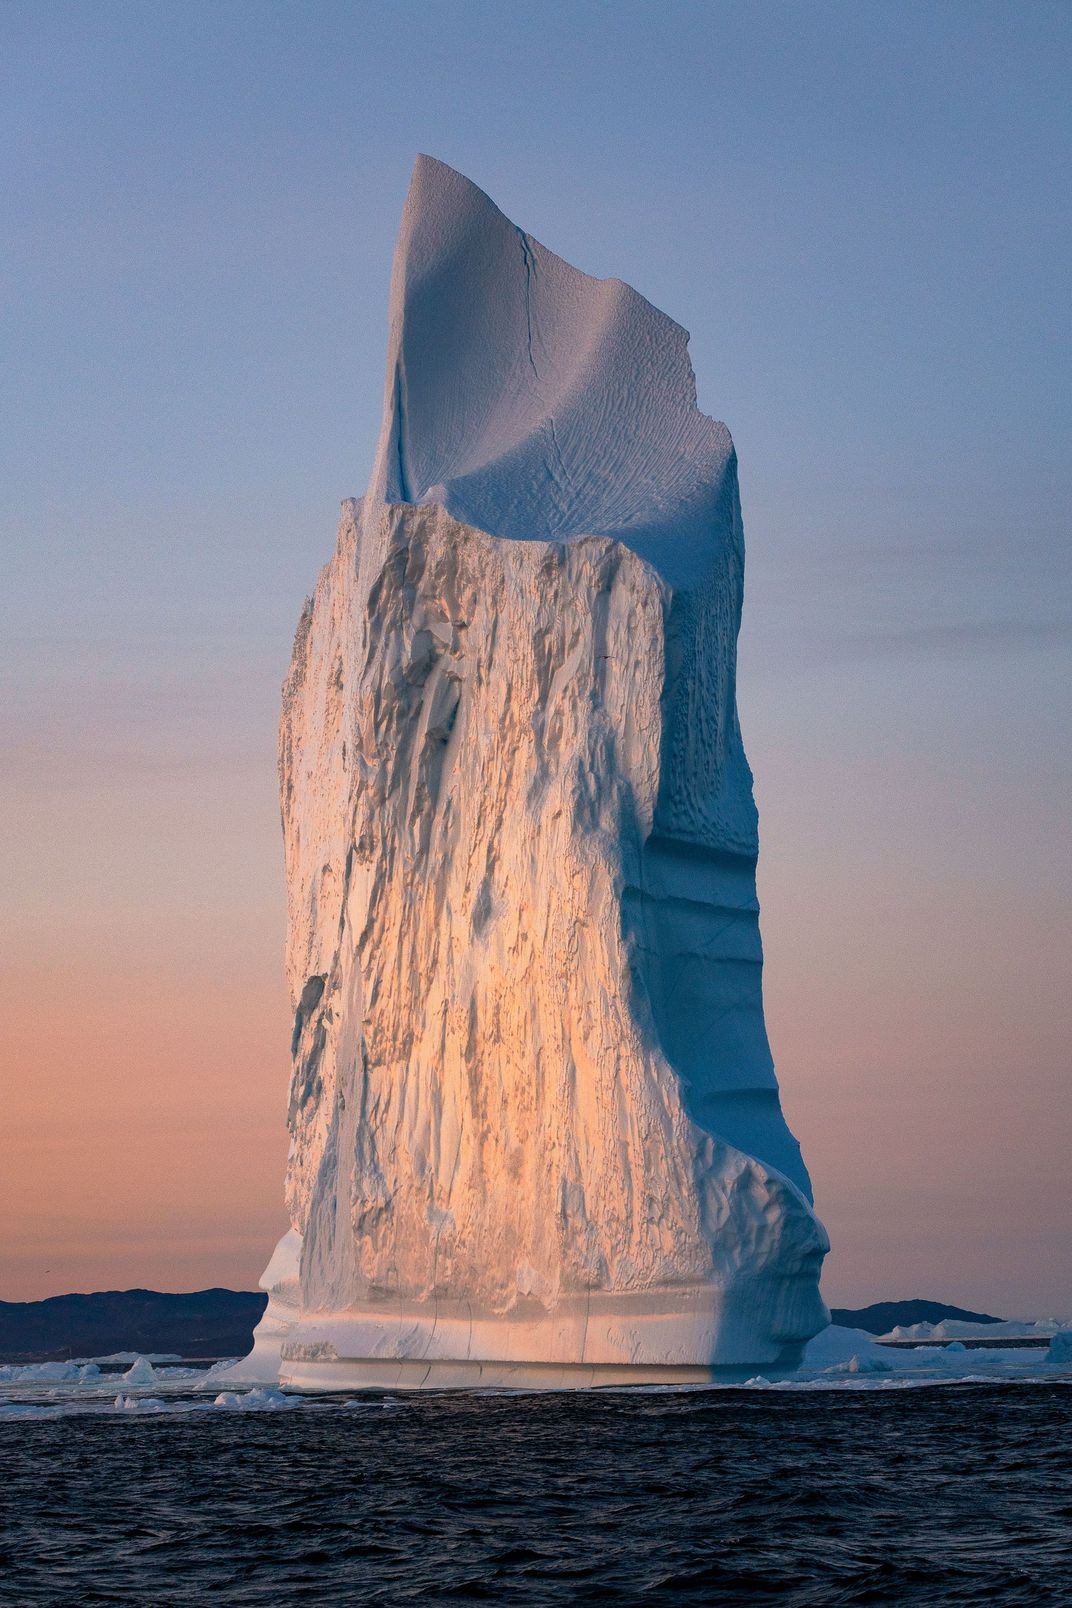 Победитель в категории Путешествия, 2019. Айсберг в лучах заката, Гренландия. Автор Натнатча Чатурапитаморн